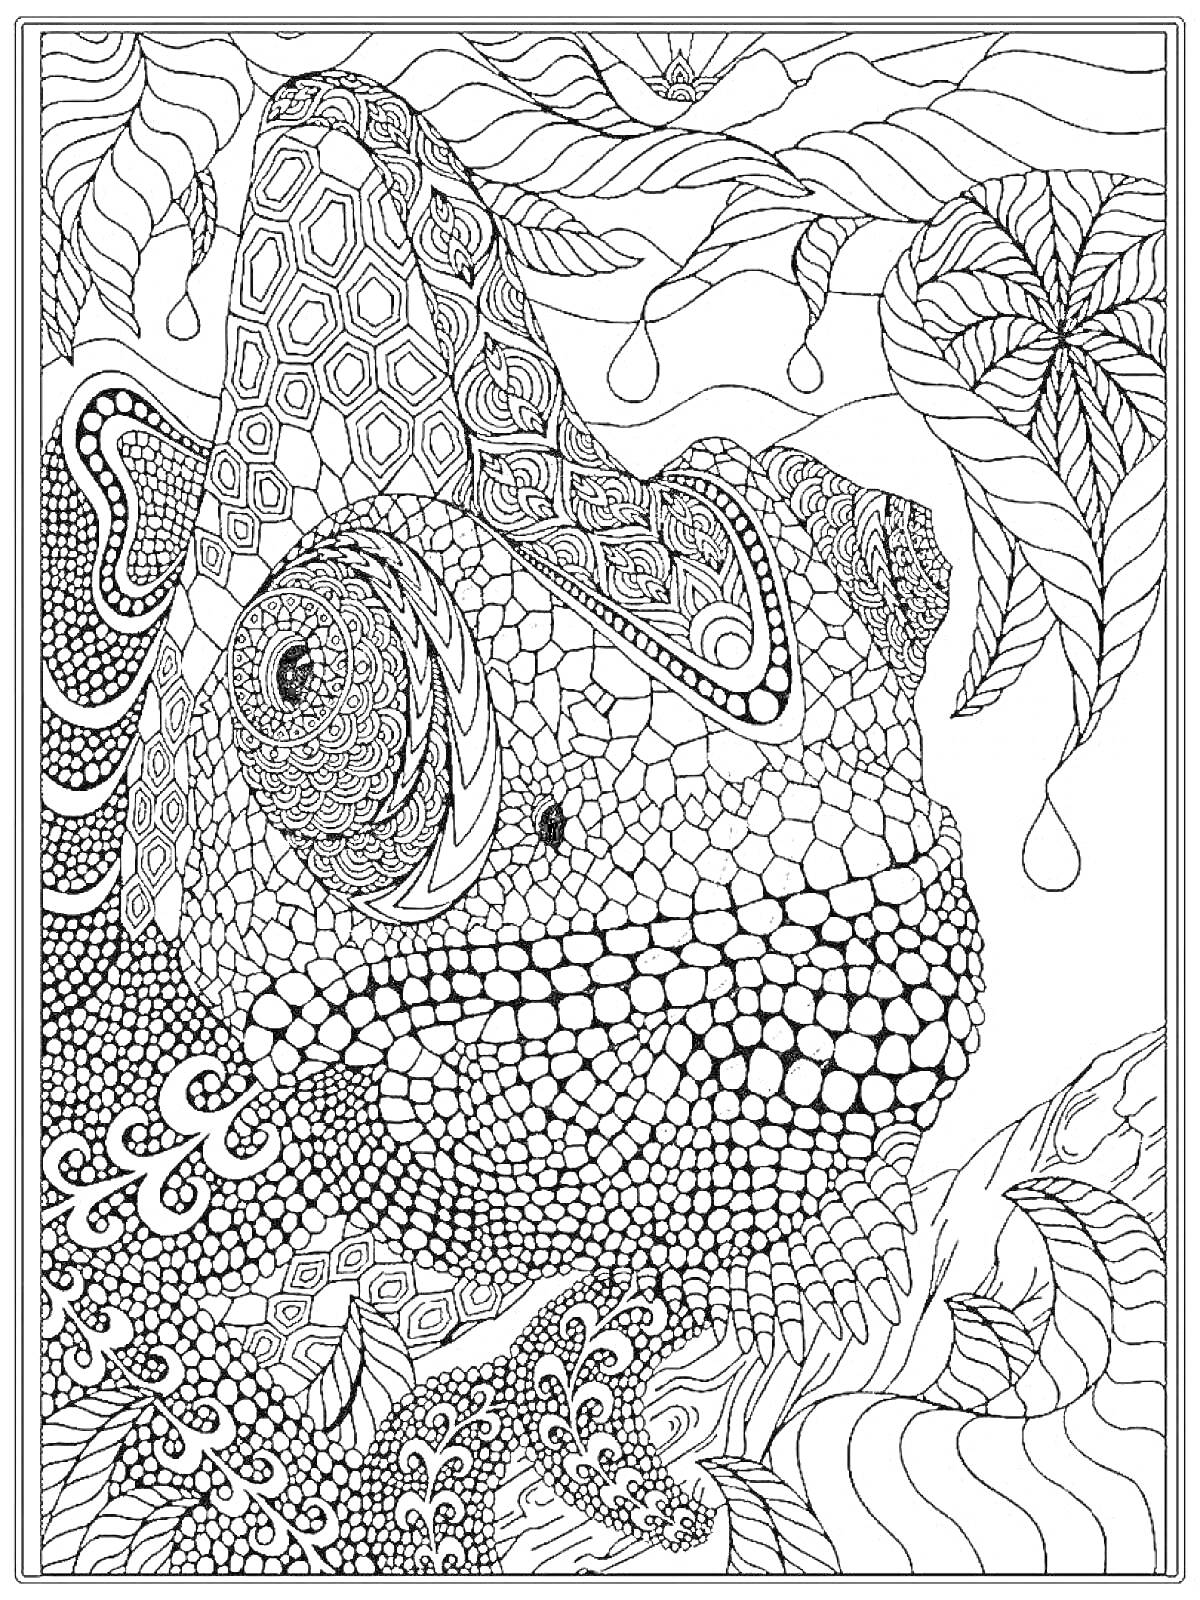 Раскраска Хамелеон в окружении листьев с геометрическими и абстрактными узорами